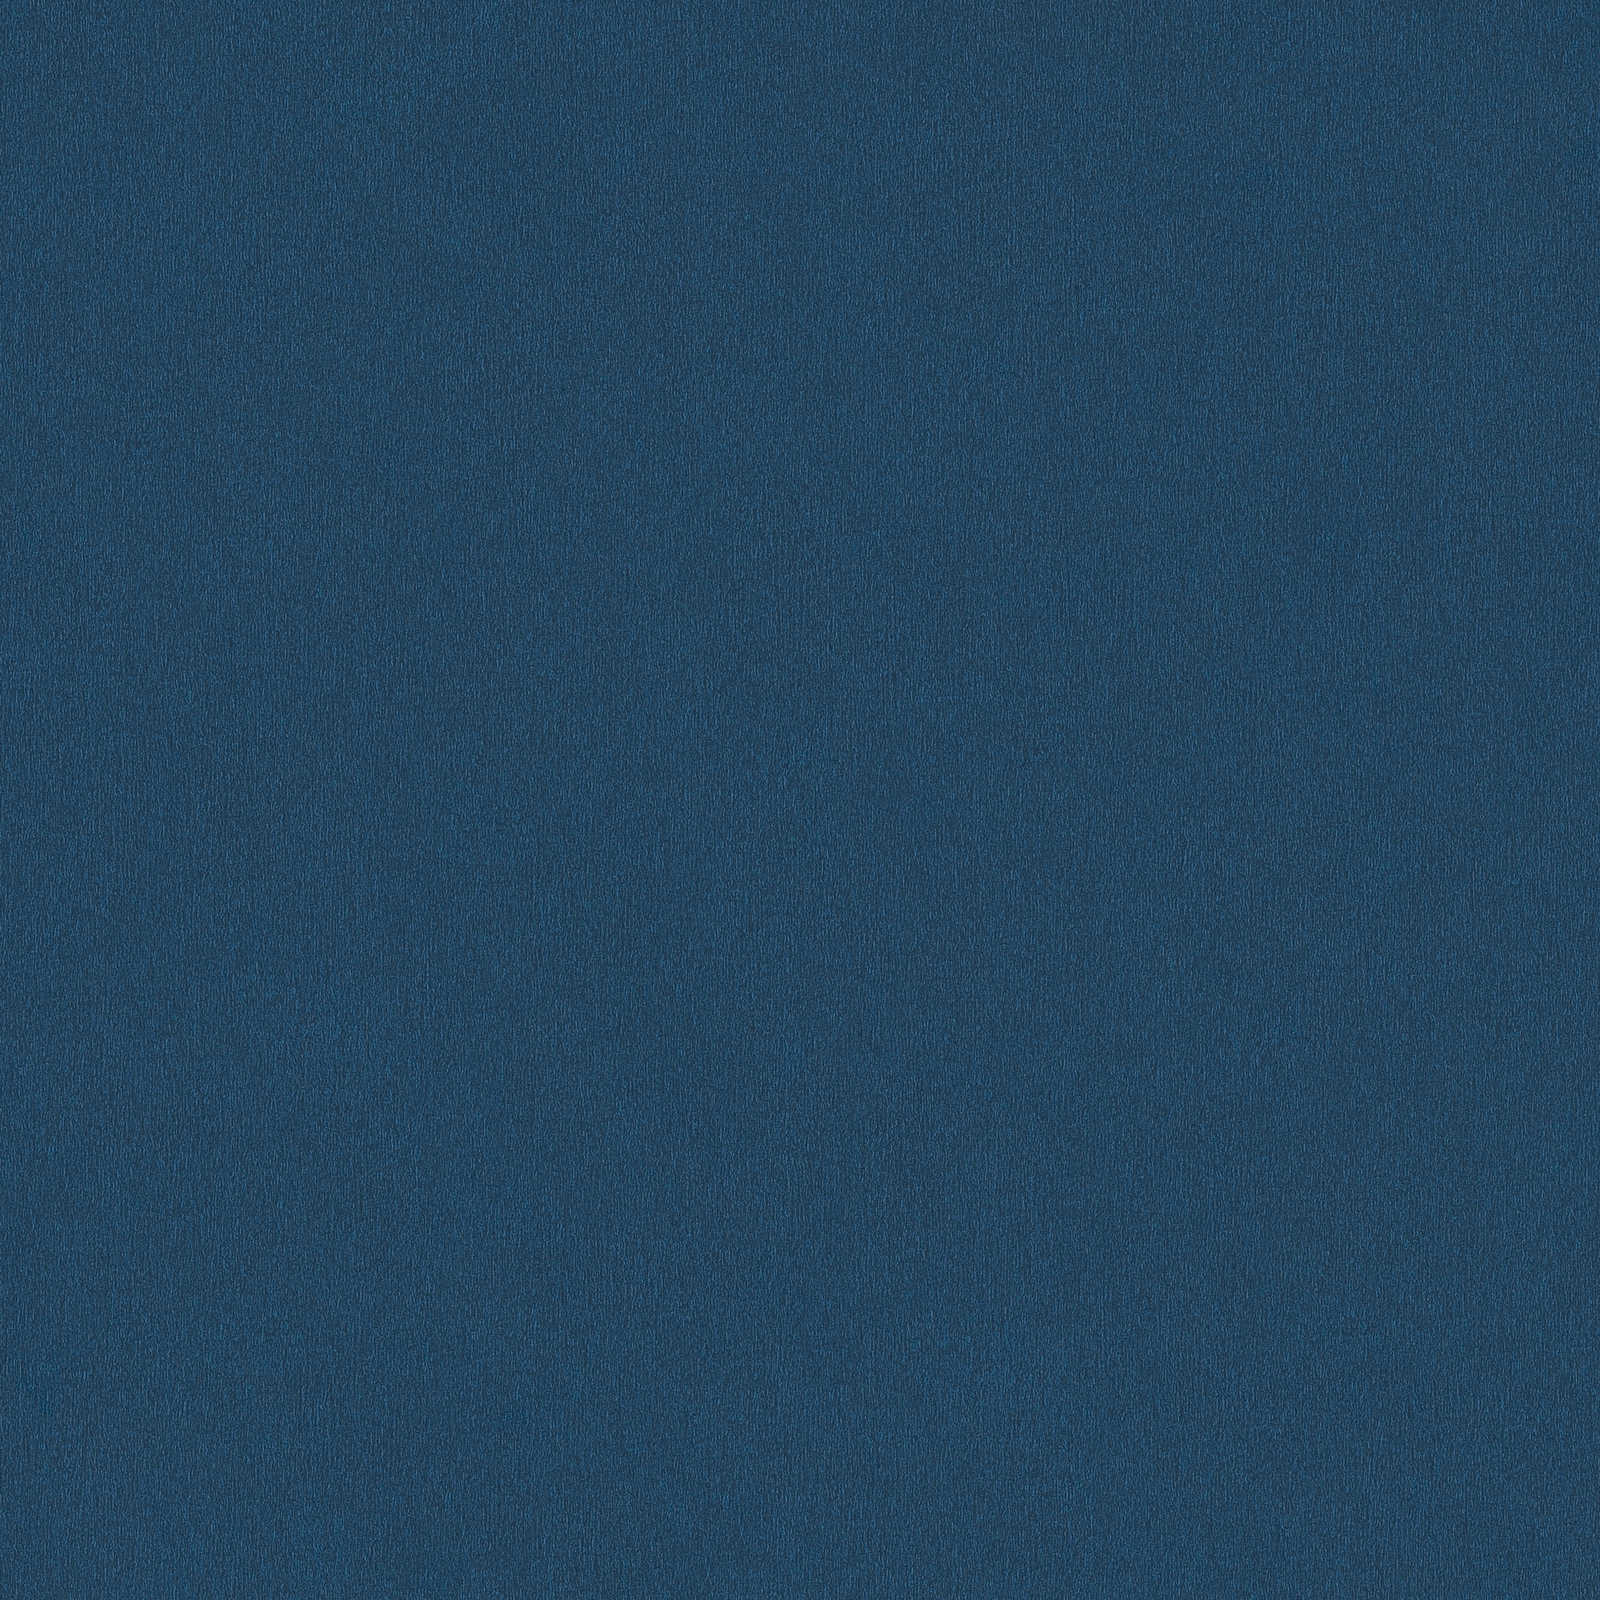 papel pintado azul oscuro, azul marino liso con sombreado de color
